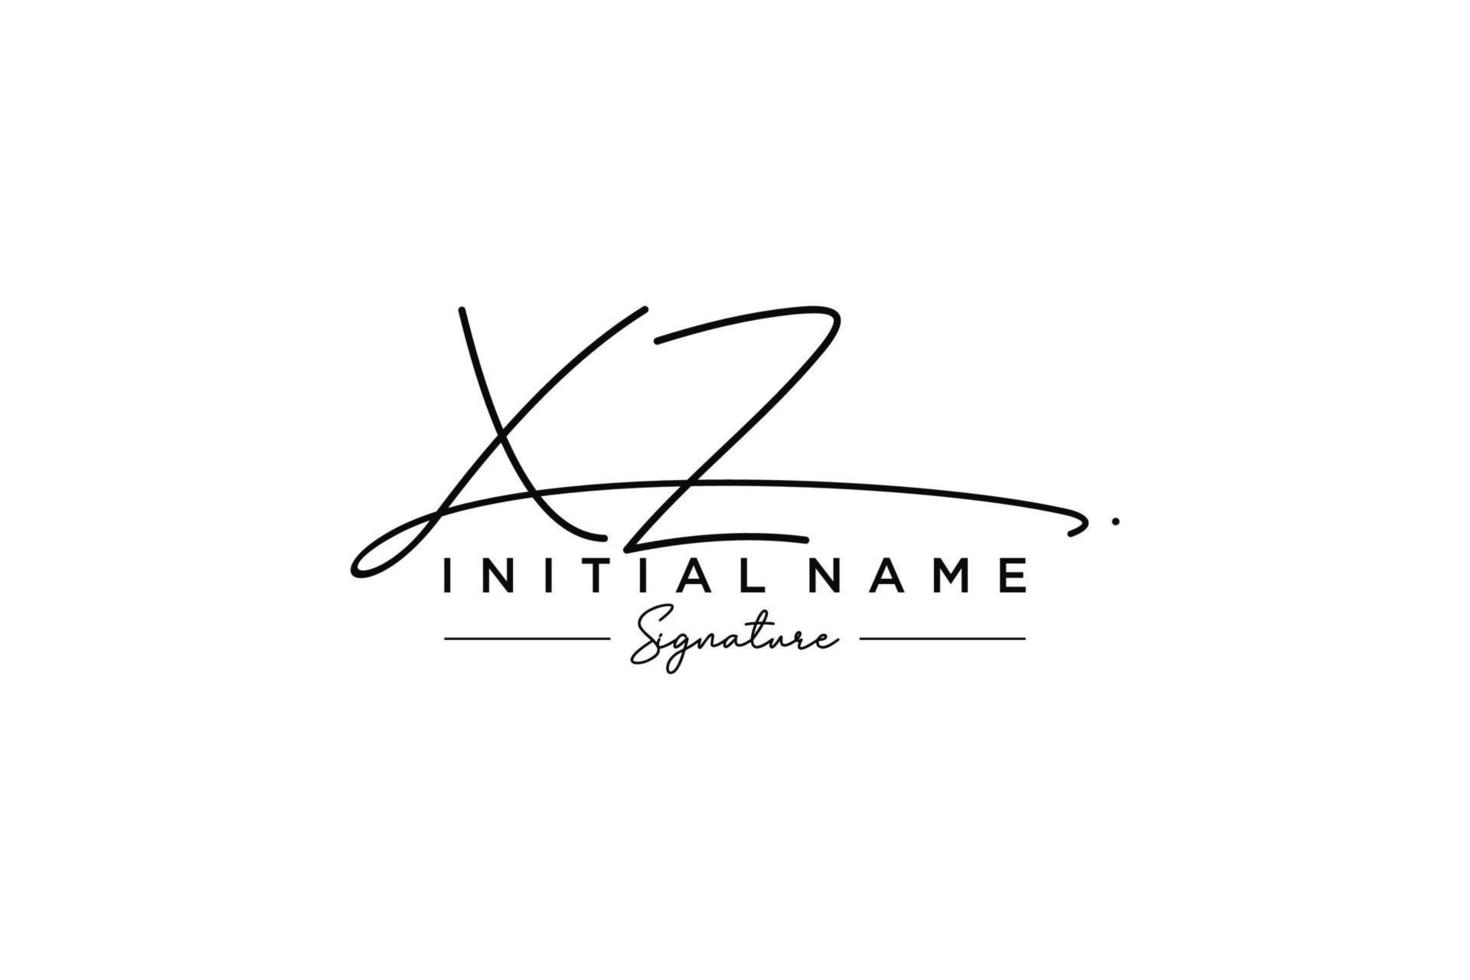 vetor de modelo de logotipo de assinatura xz inicial. ilustração vetorial de letras de caligrafia desenhada à mão.